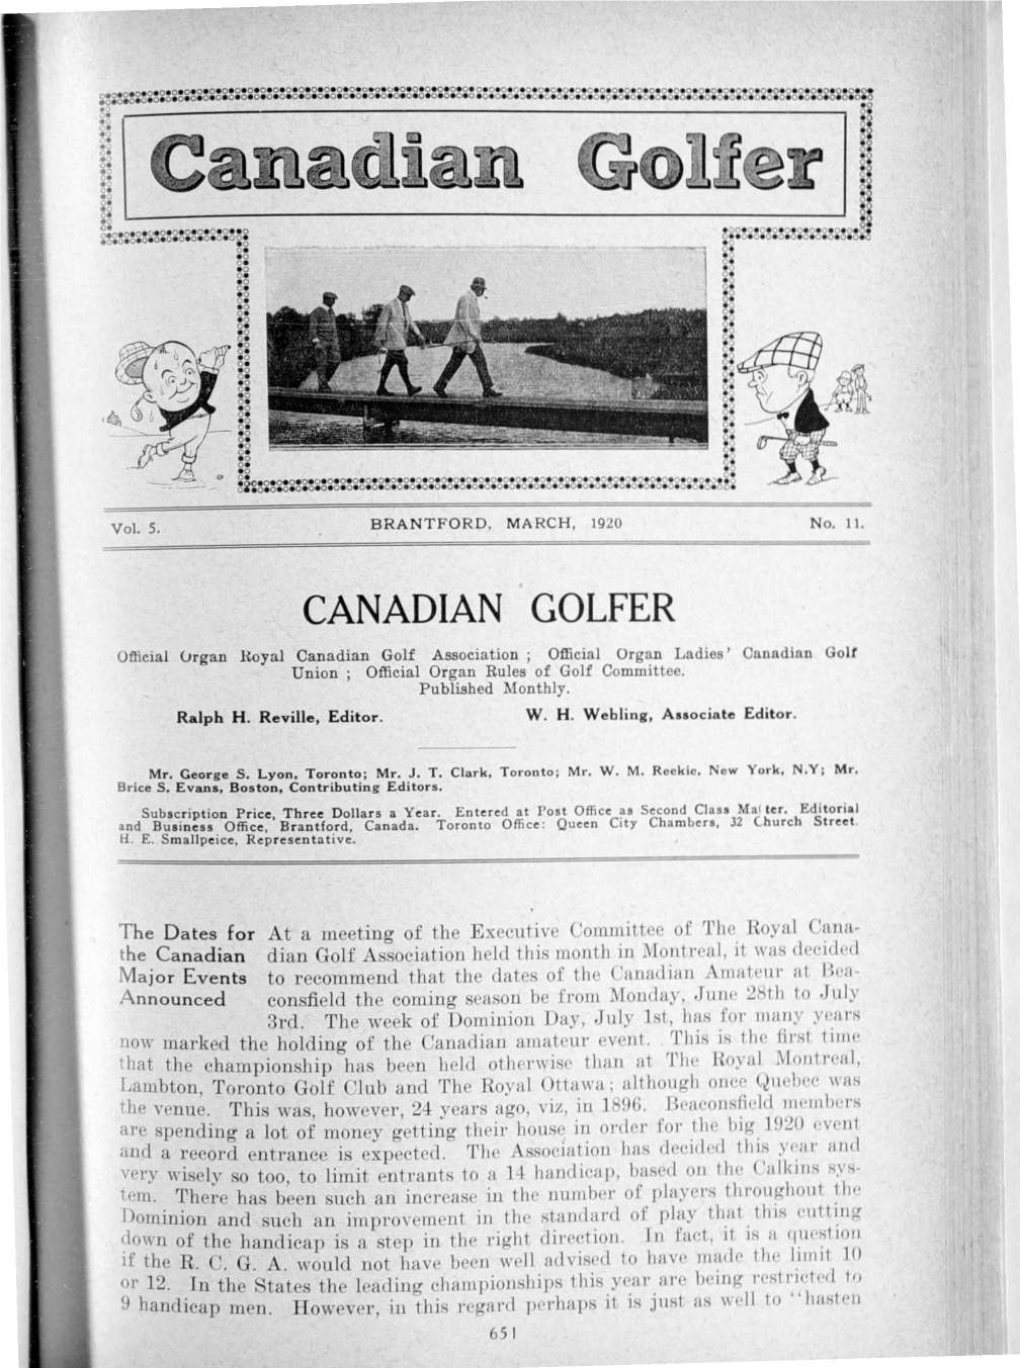 Canadian Golfer, March, 1920